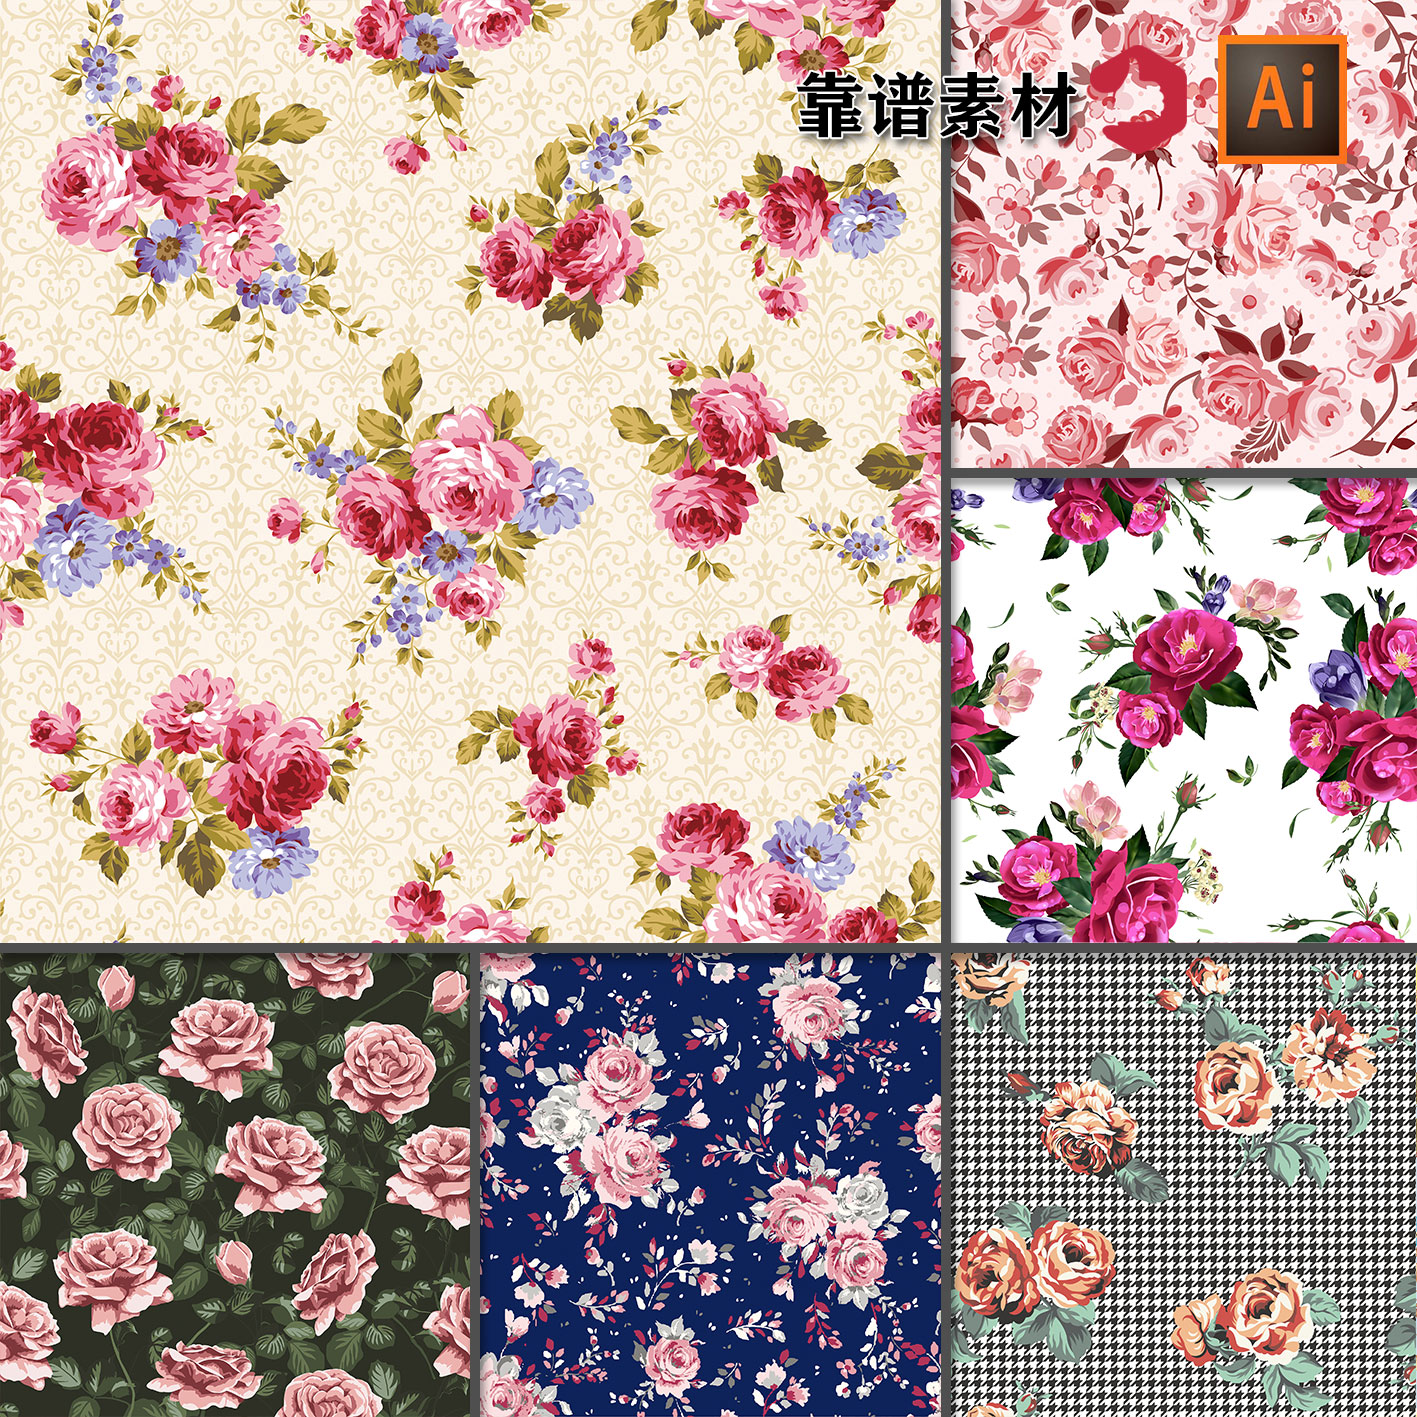 玫瑰花碎花鲜花花朵花卉服饰服装印花图案墙纸AI矢量设计素材